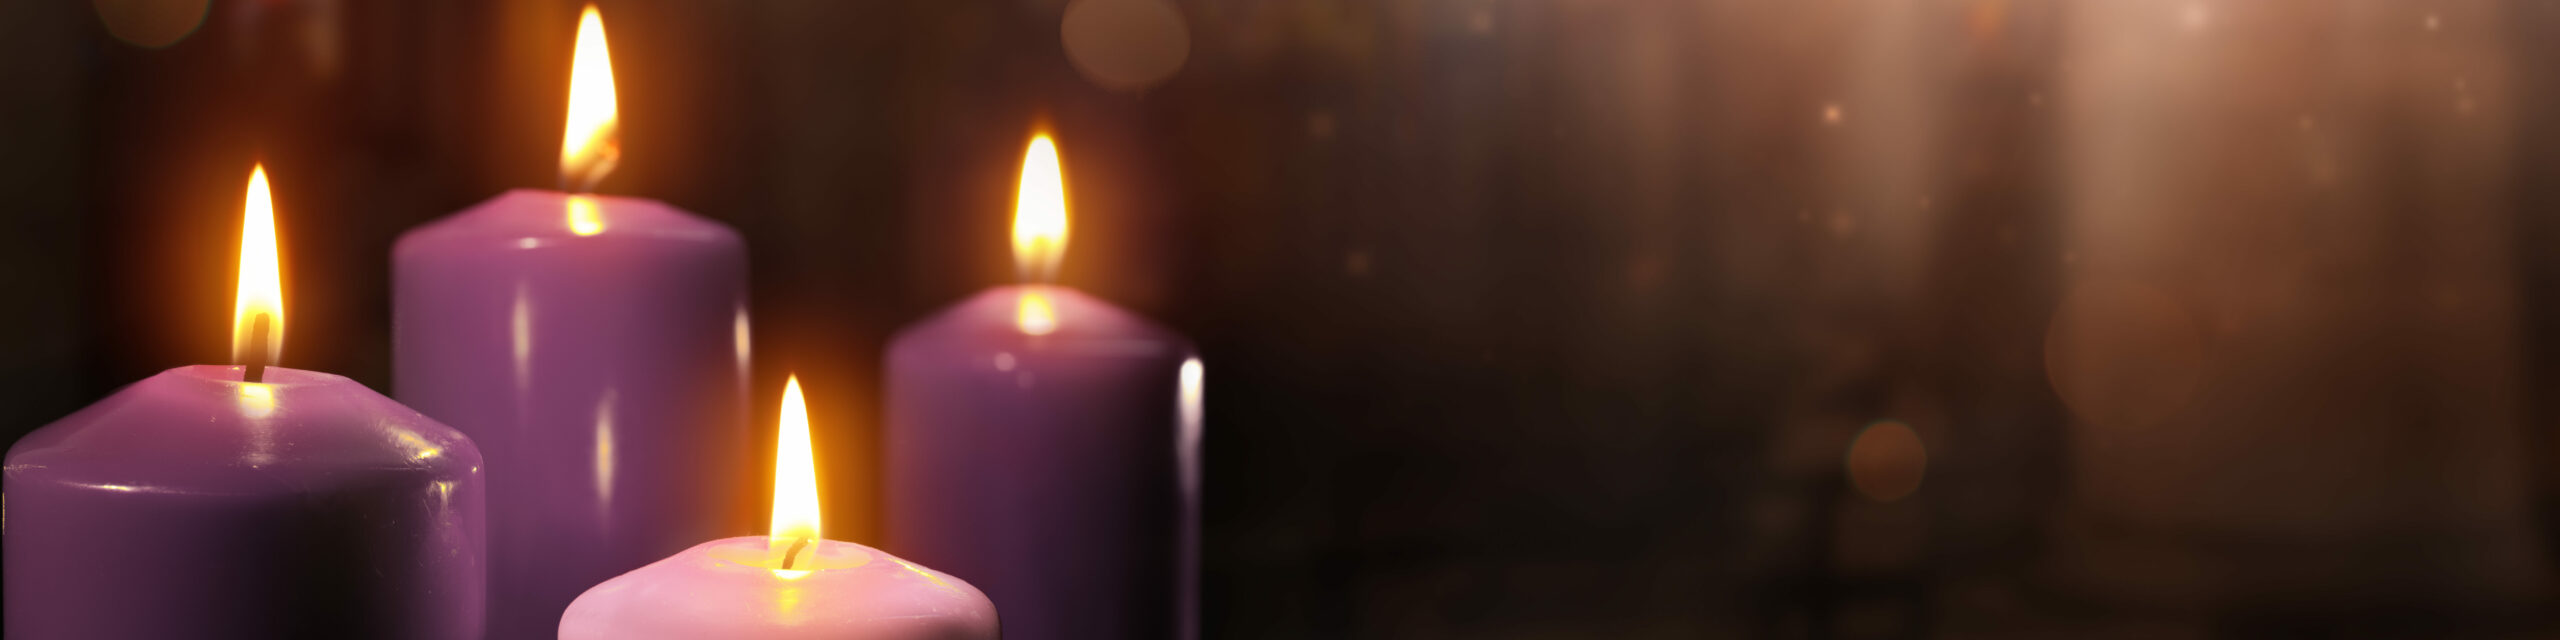 Adventskranz in liturgischen Farben Violett und Rosa